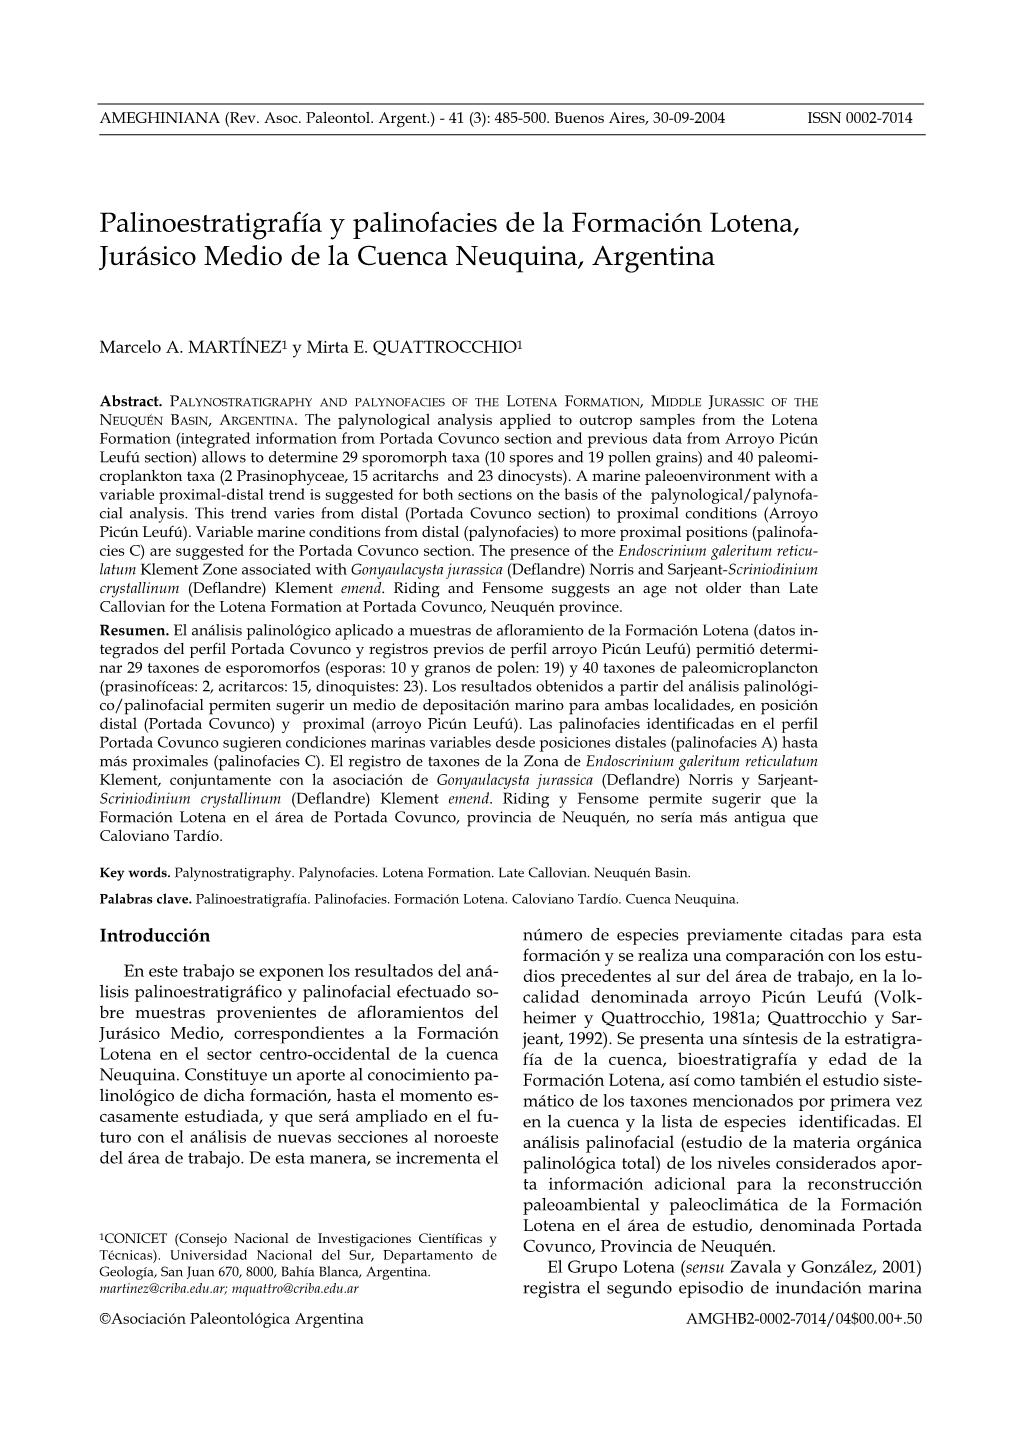 Palinoestratigrafía Y Palinofacies De La Formación Lotena, Jurásico Medio De La Cuenca Neuquina, Argentina